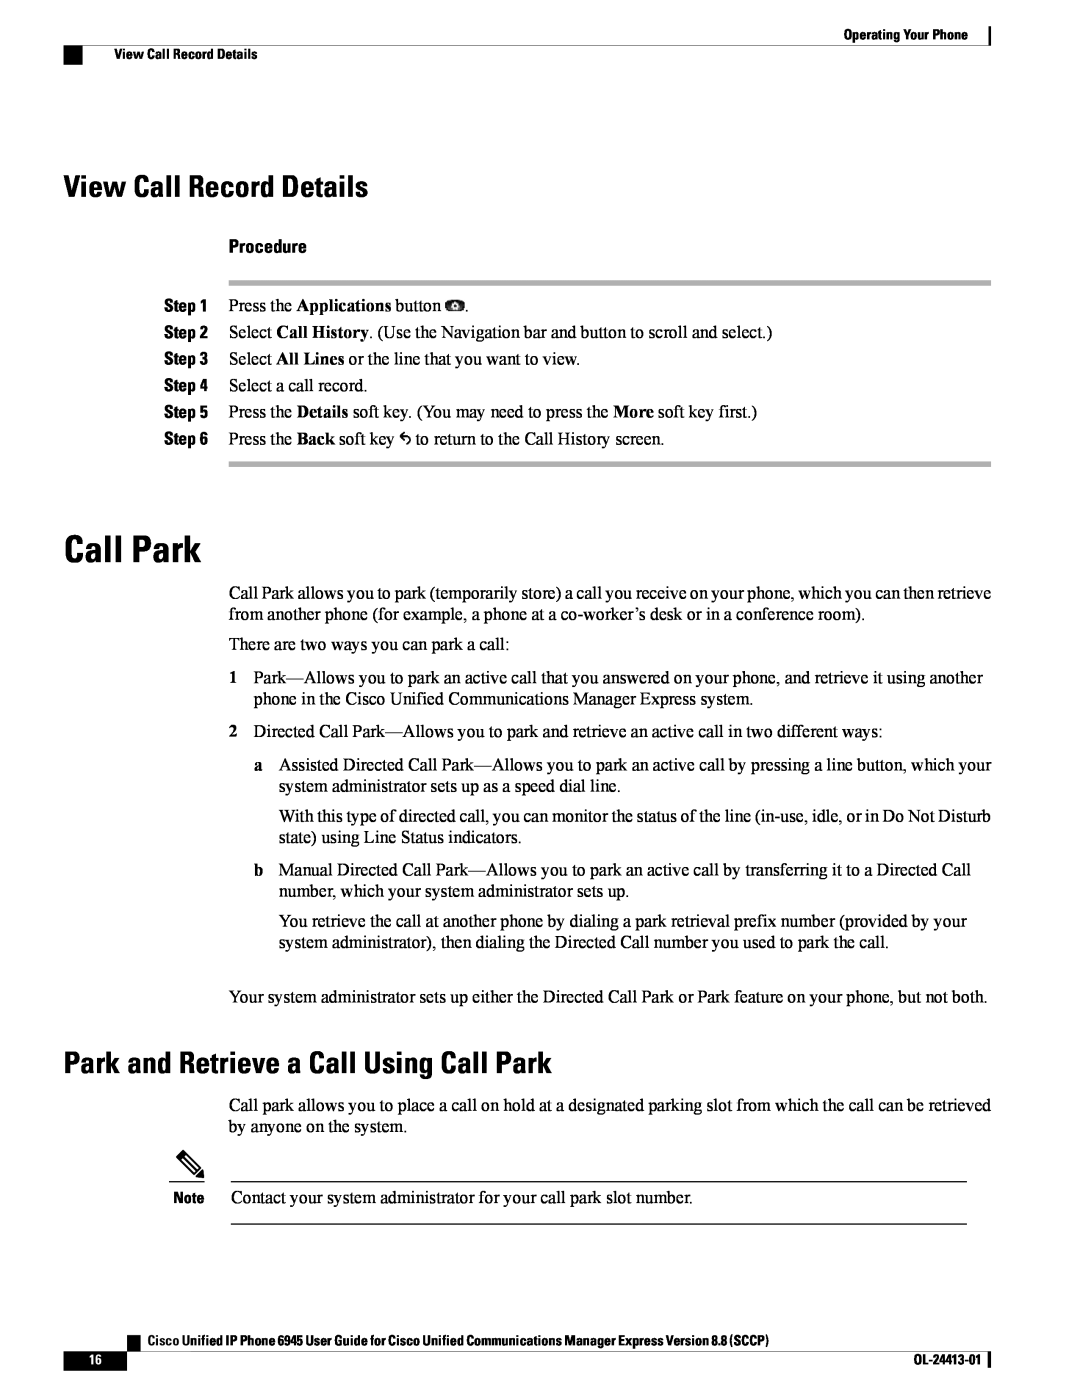 Cisco Systems 6945 manual View Call Record Details, Park and Retrieve a Call Using Call Park, Procedure 